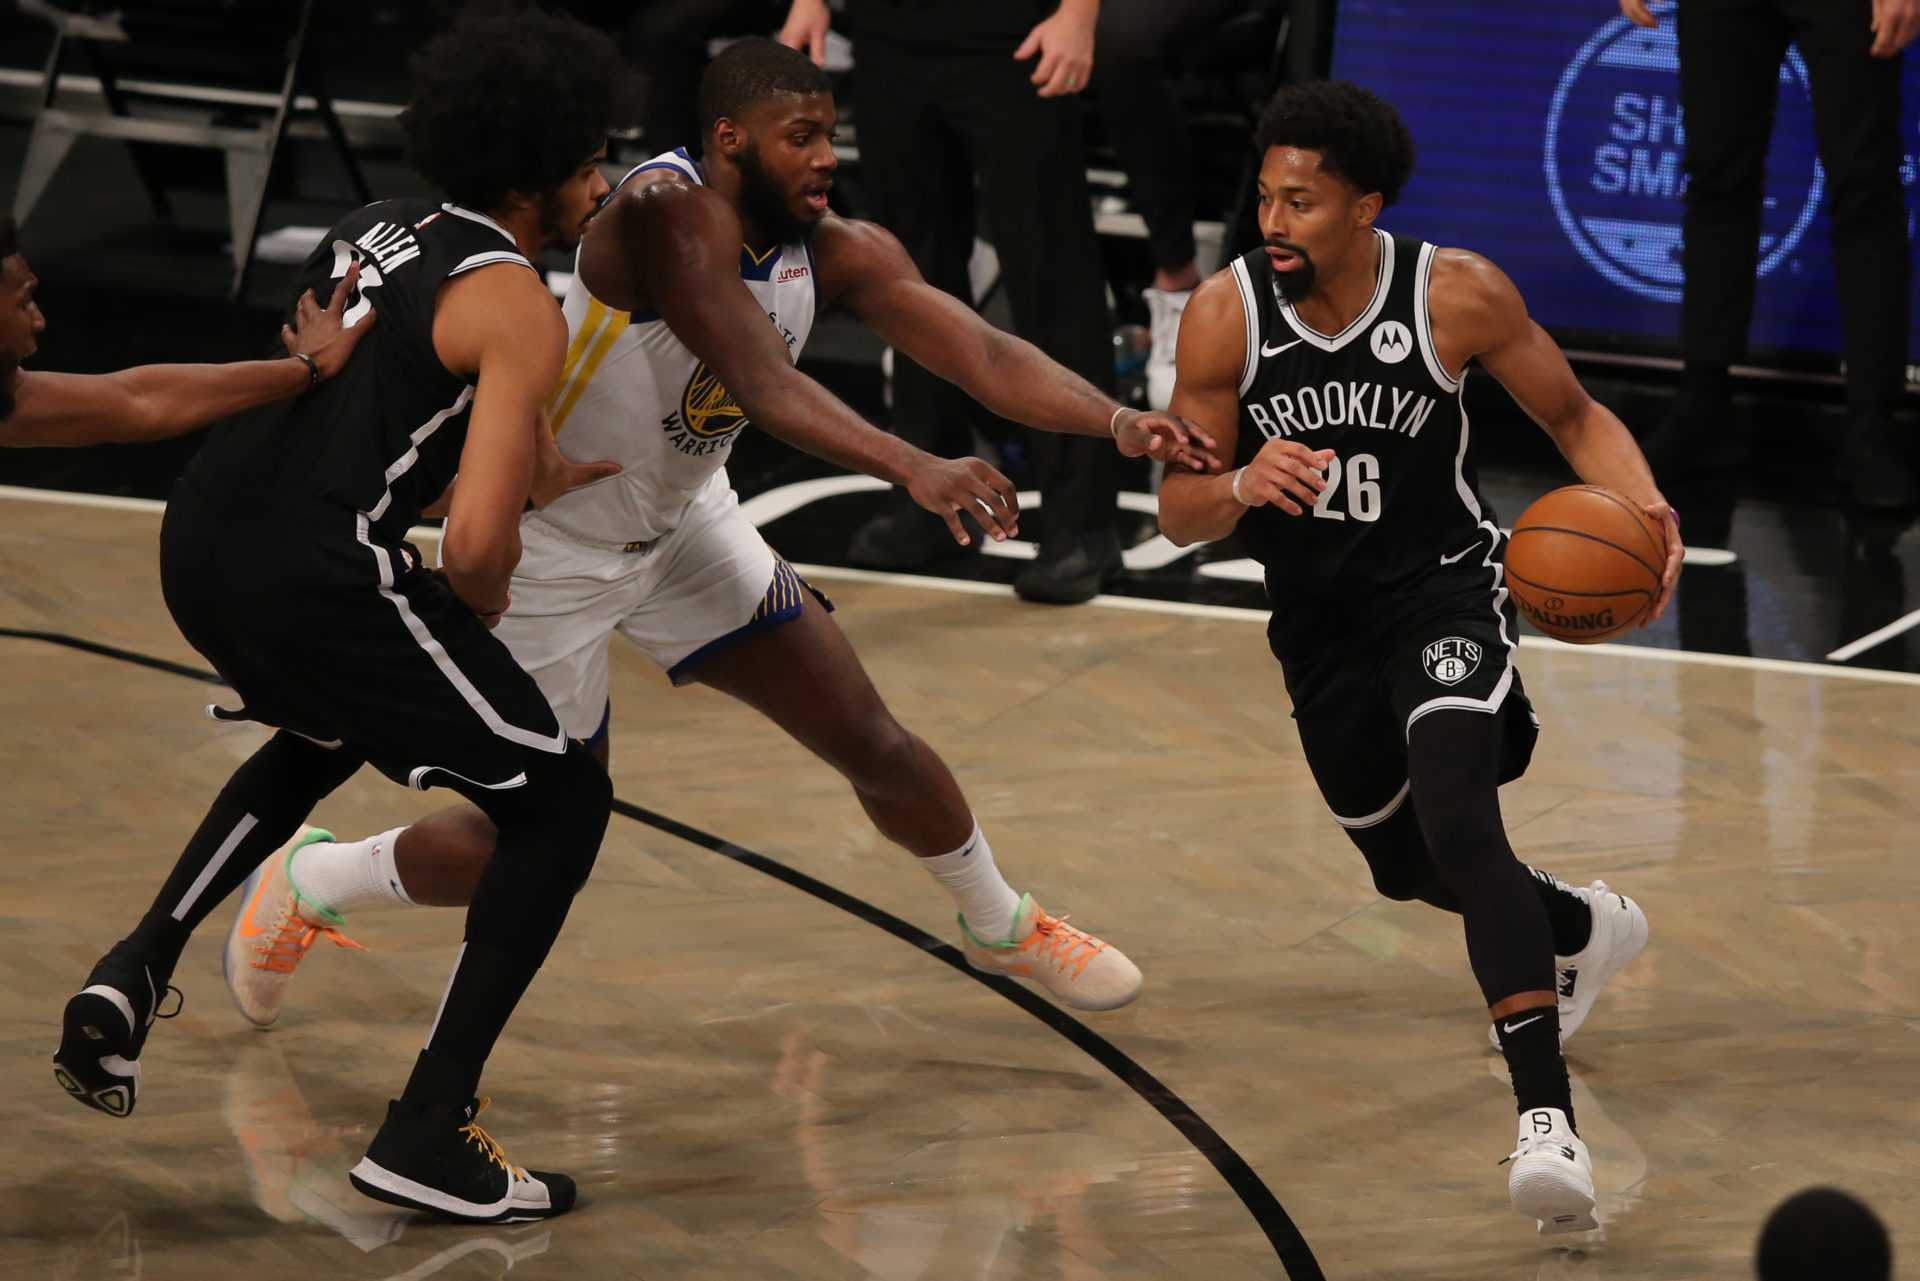 Rumeurs commerciales de la NBA: les pistons sont intéressés par un échange possible pour Spencer Dinwiddie des Brooklyn Nets